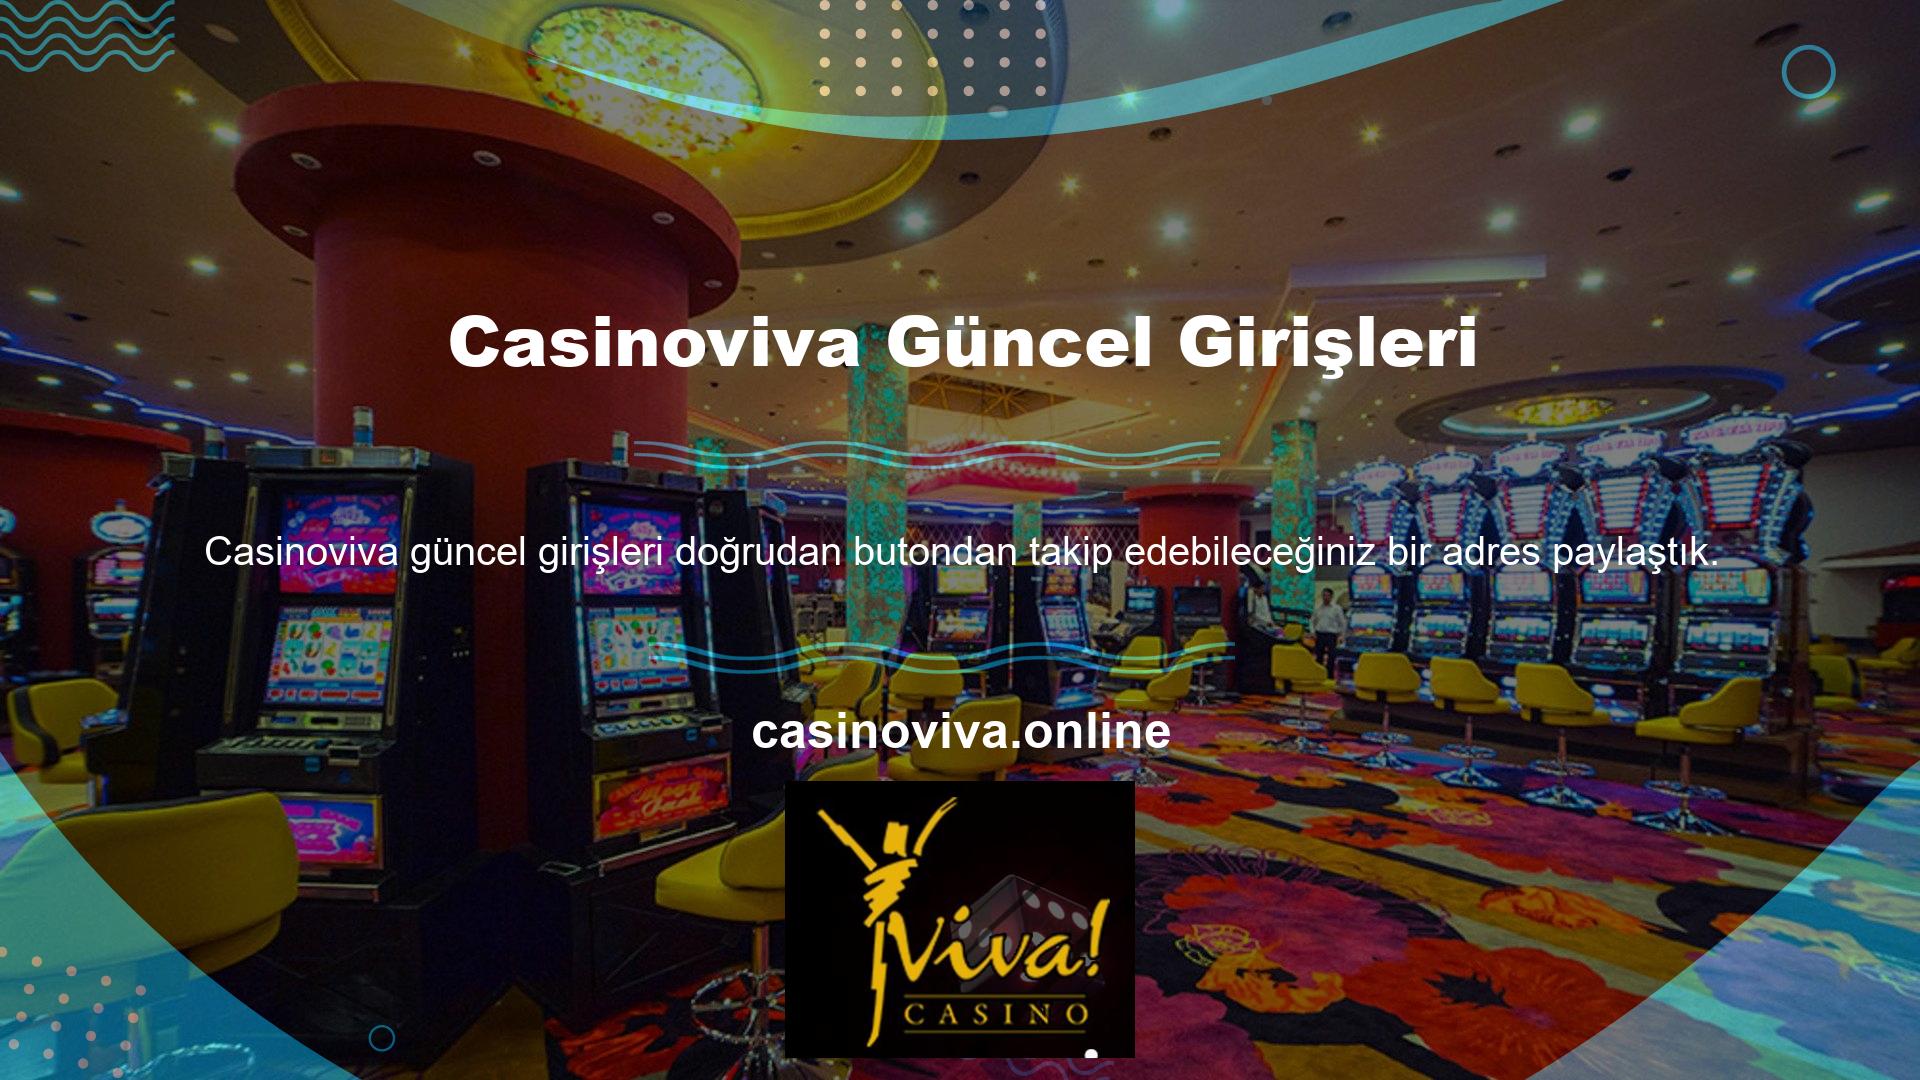 Casinoviva yeni giriş düğmesine tıklayın ve hemen web sitemizin kayıt alanına yönlendirileceksiniz